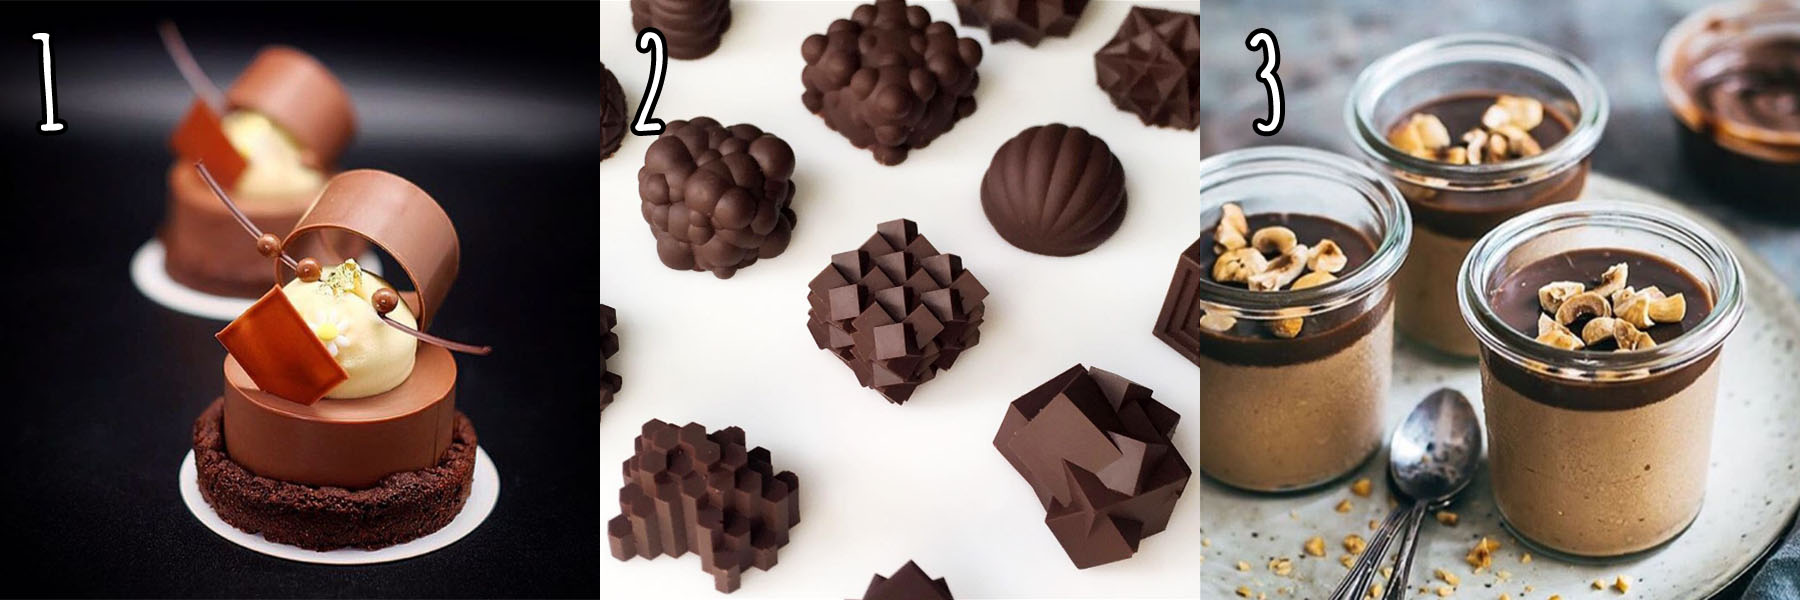 czekolada instagram